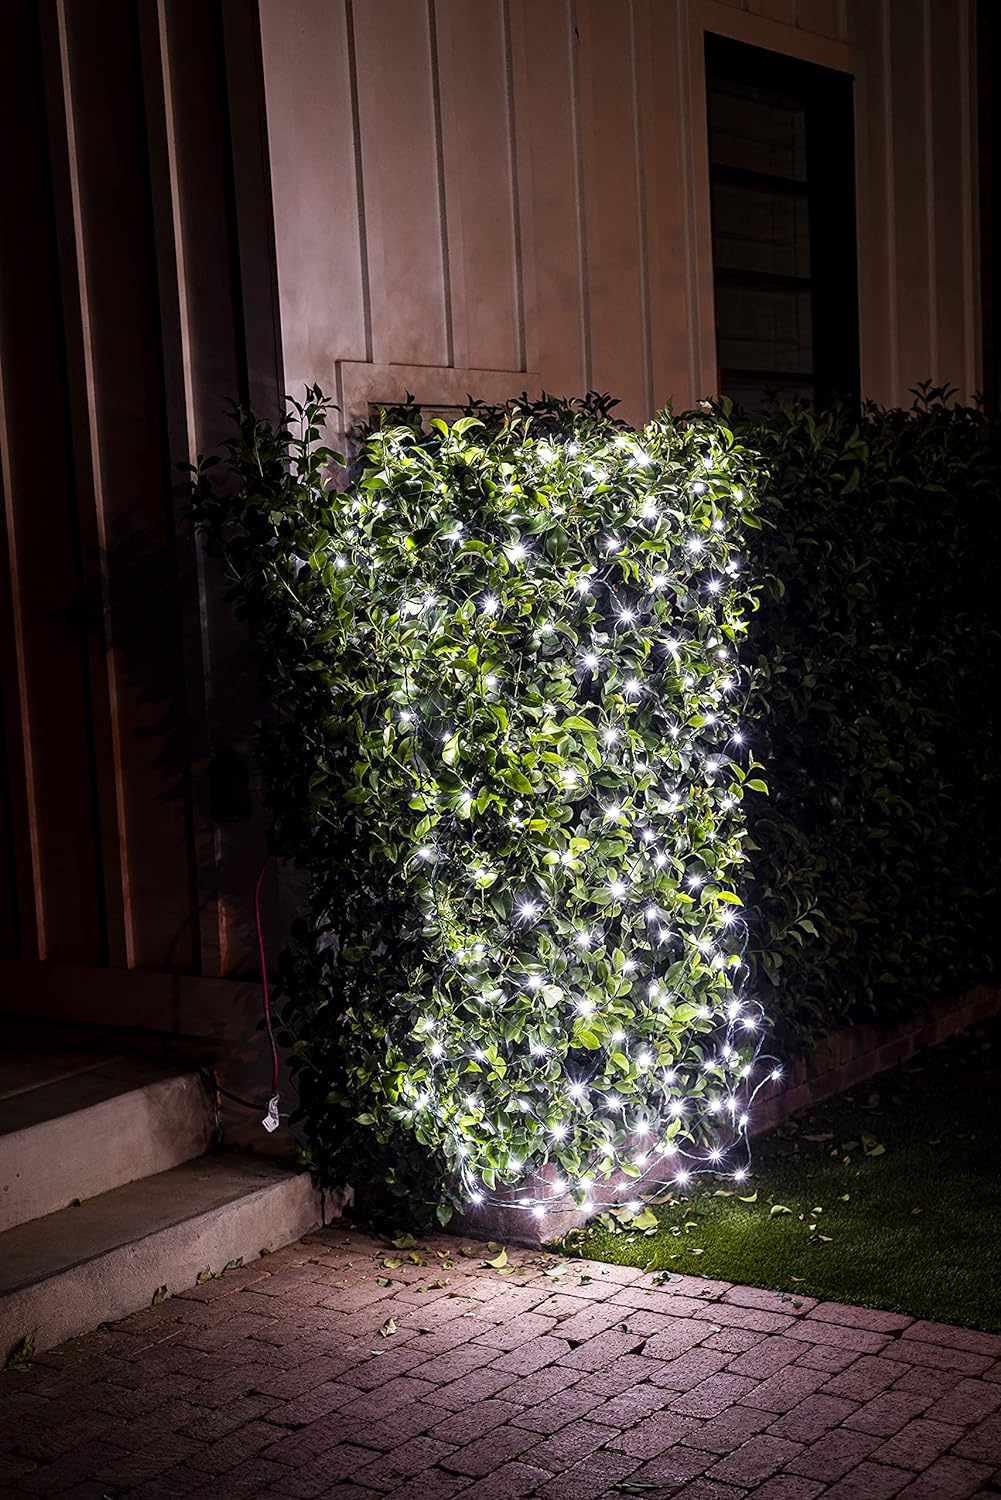 Luces de navidad LED blancas, estilo malla/net  para arbustos. 2 juegos de 100 luces (200 en total). Joiedomi